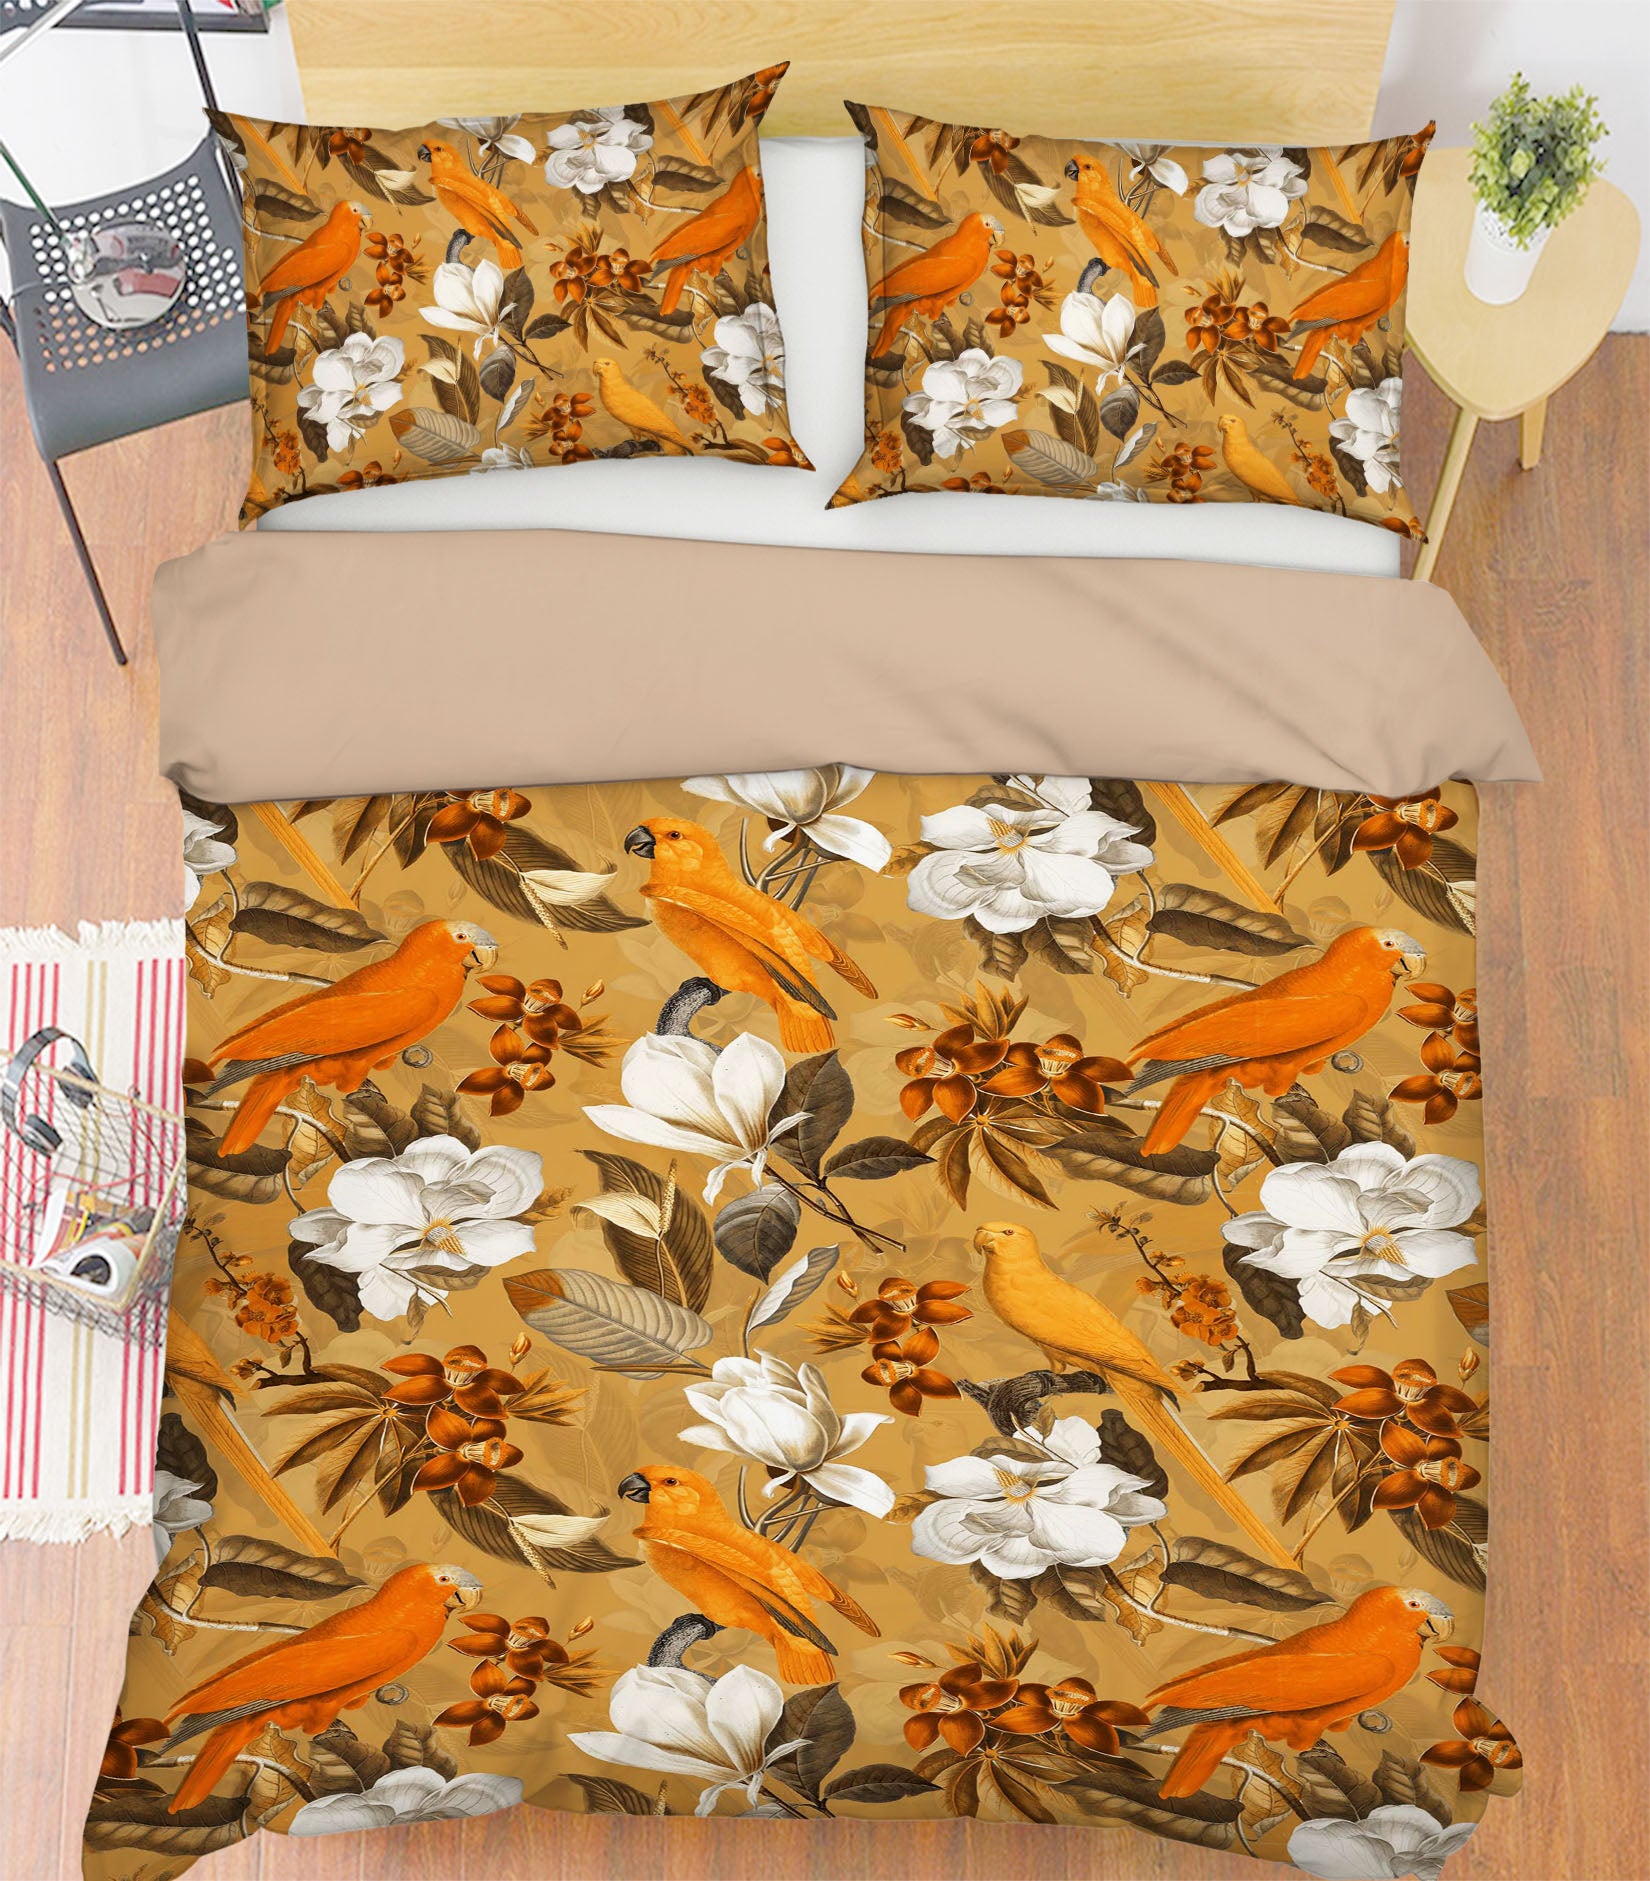 3D Orange Parrot 185 Uta Naumann Bedding Bed Pillowcases Quilt